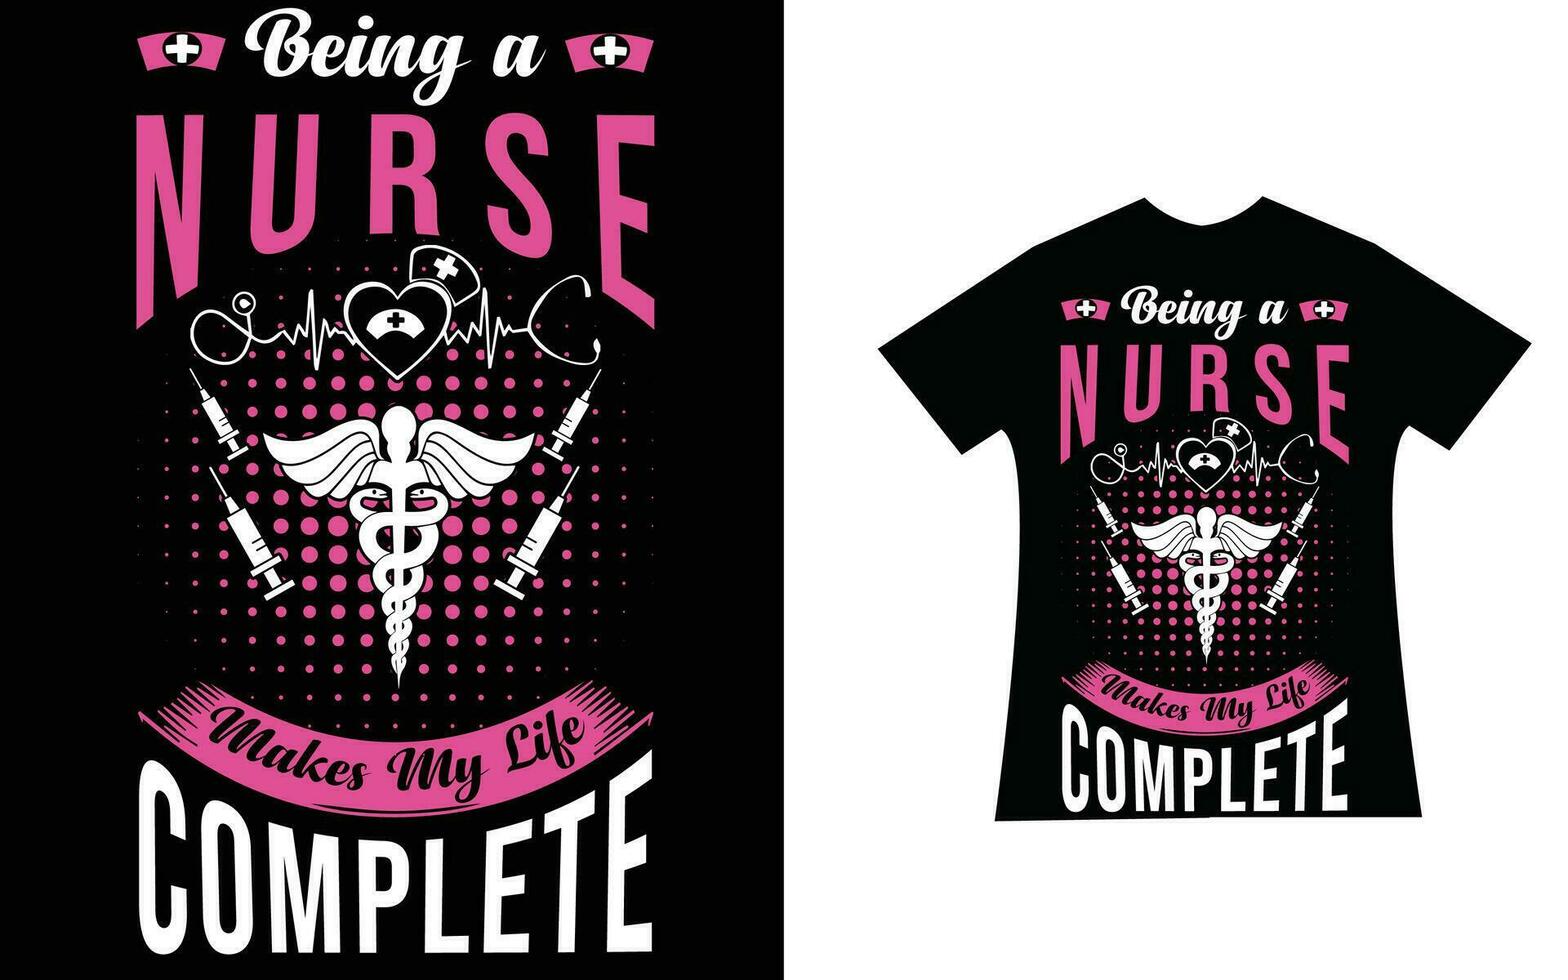 Sein ein Krankenschwester macht meine Leben Komplett Zitat T-Shirt Design Vorlage vektor